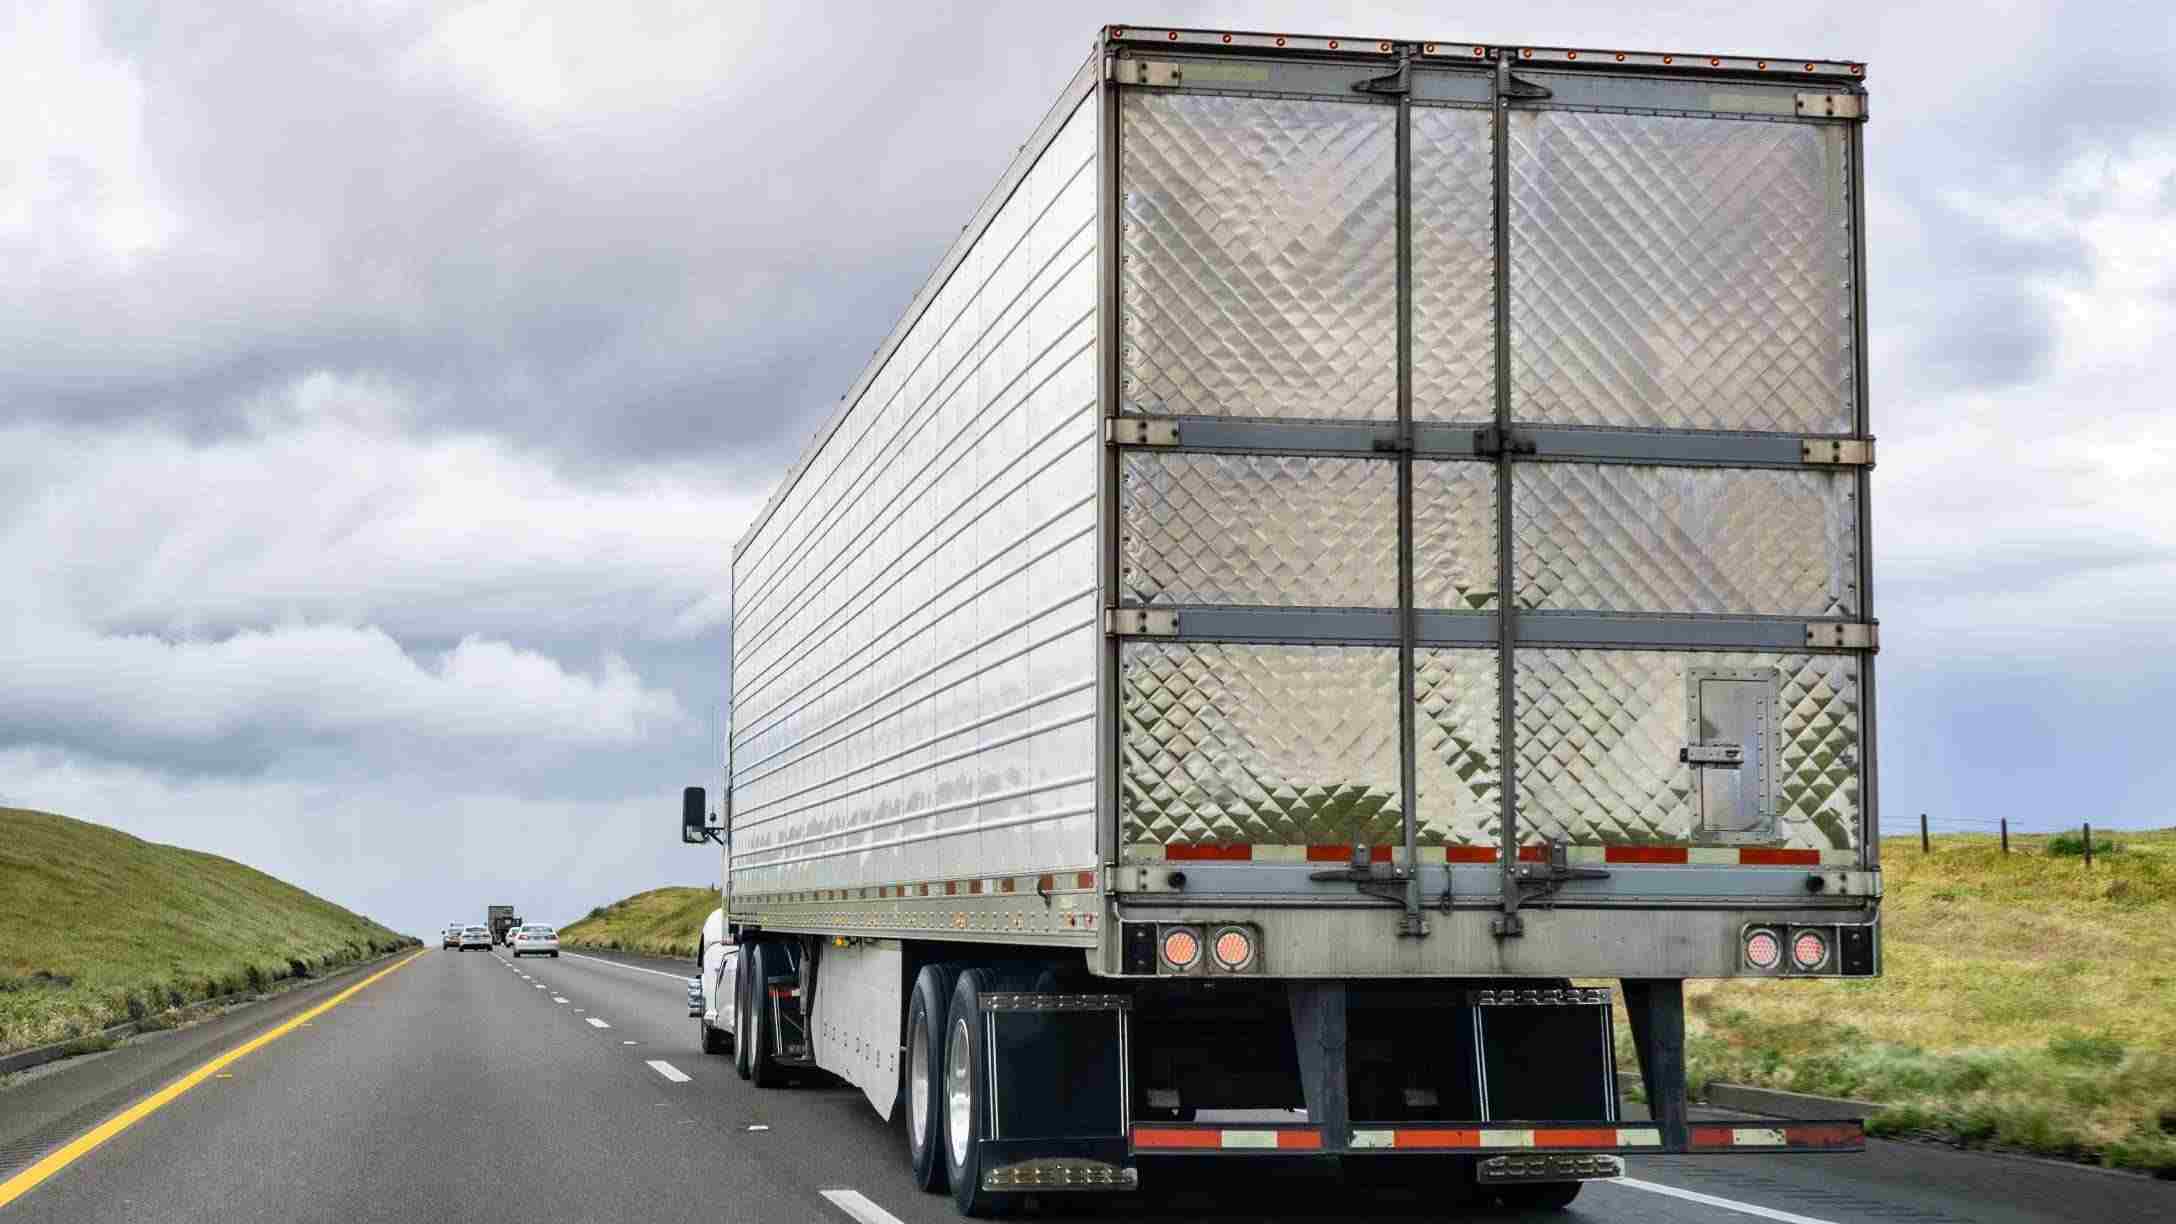 Imagen de un camión circulando en una carretera en un día nublado